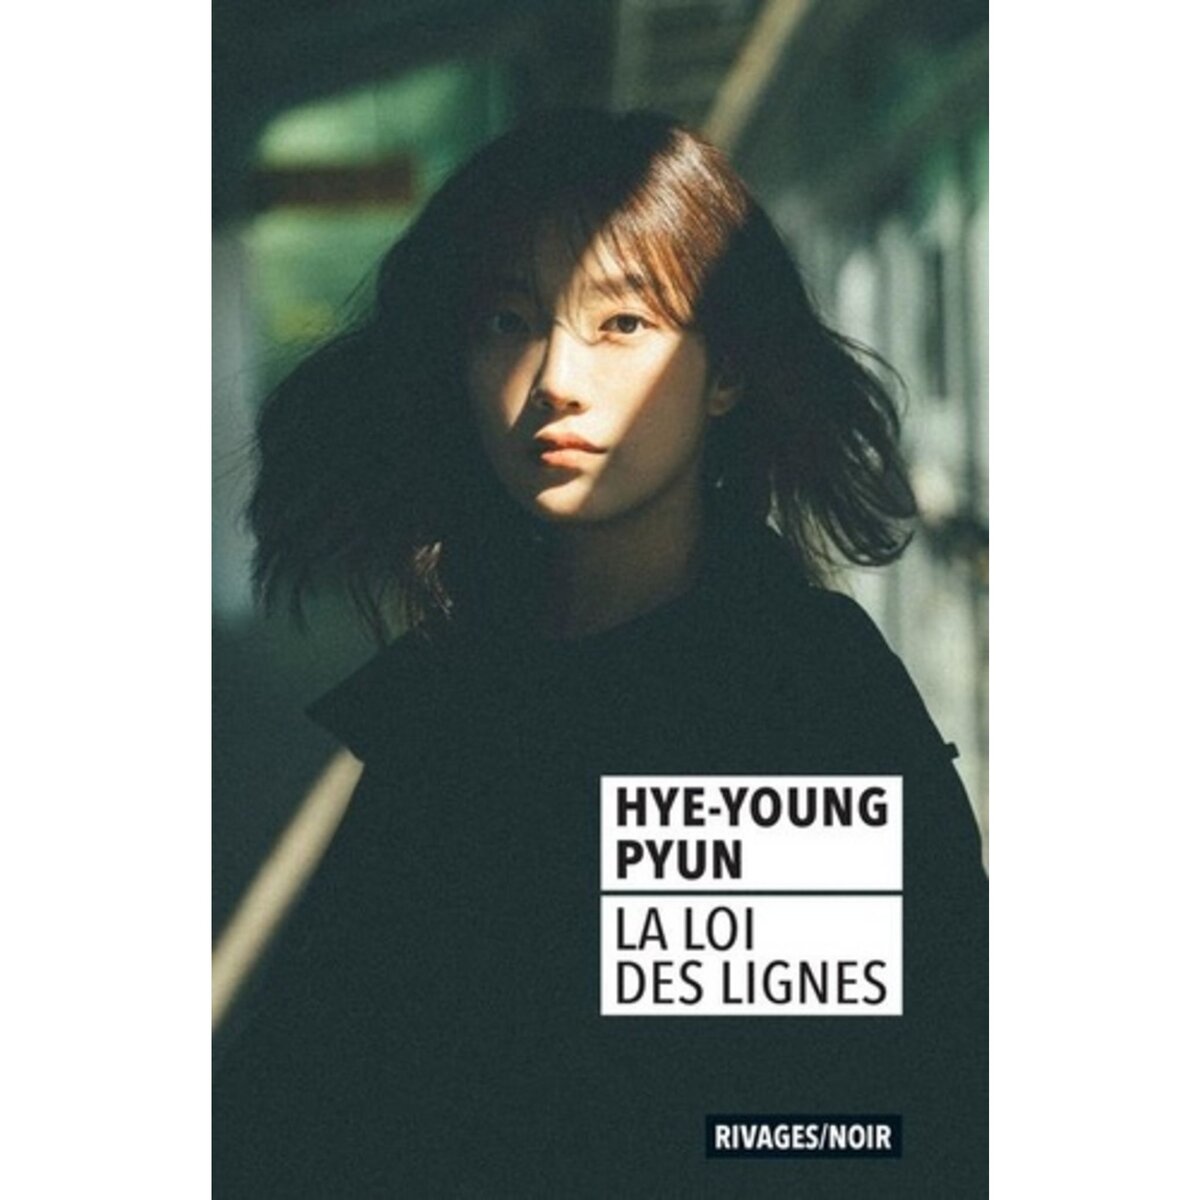  LA LOI DES LIGNES, Pyun Hye-Young